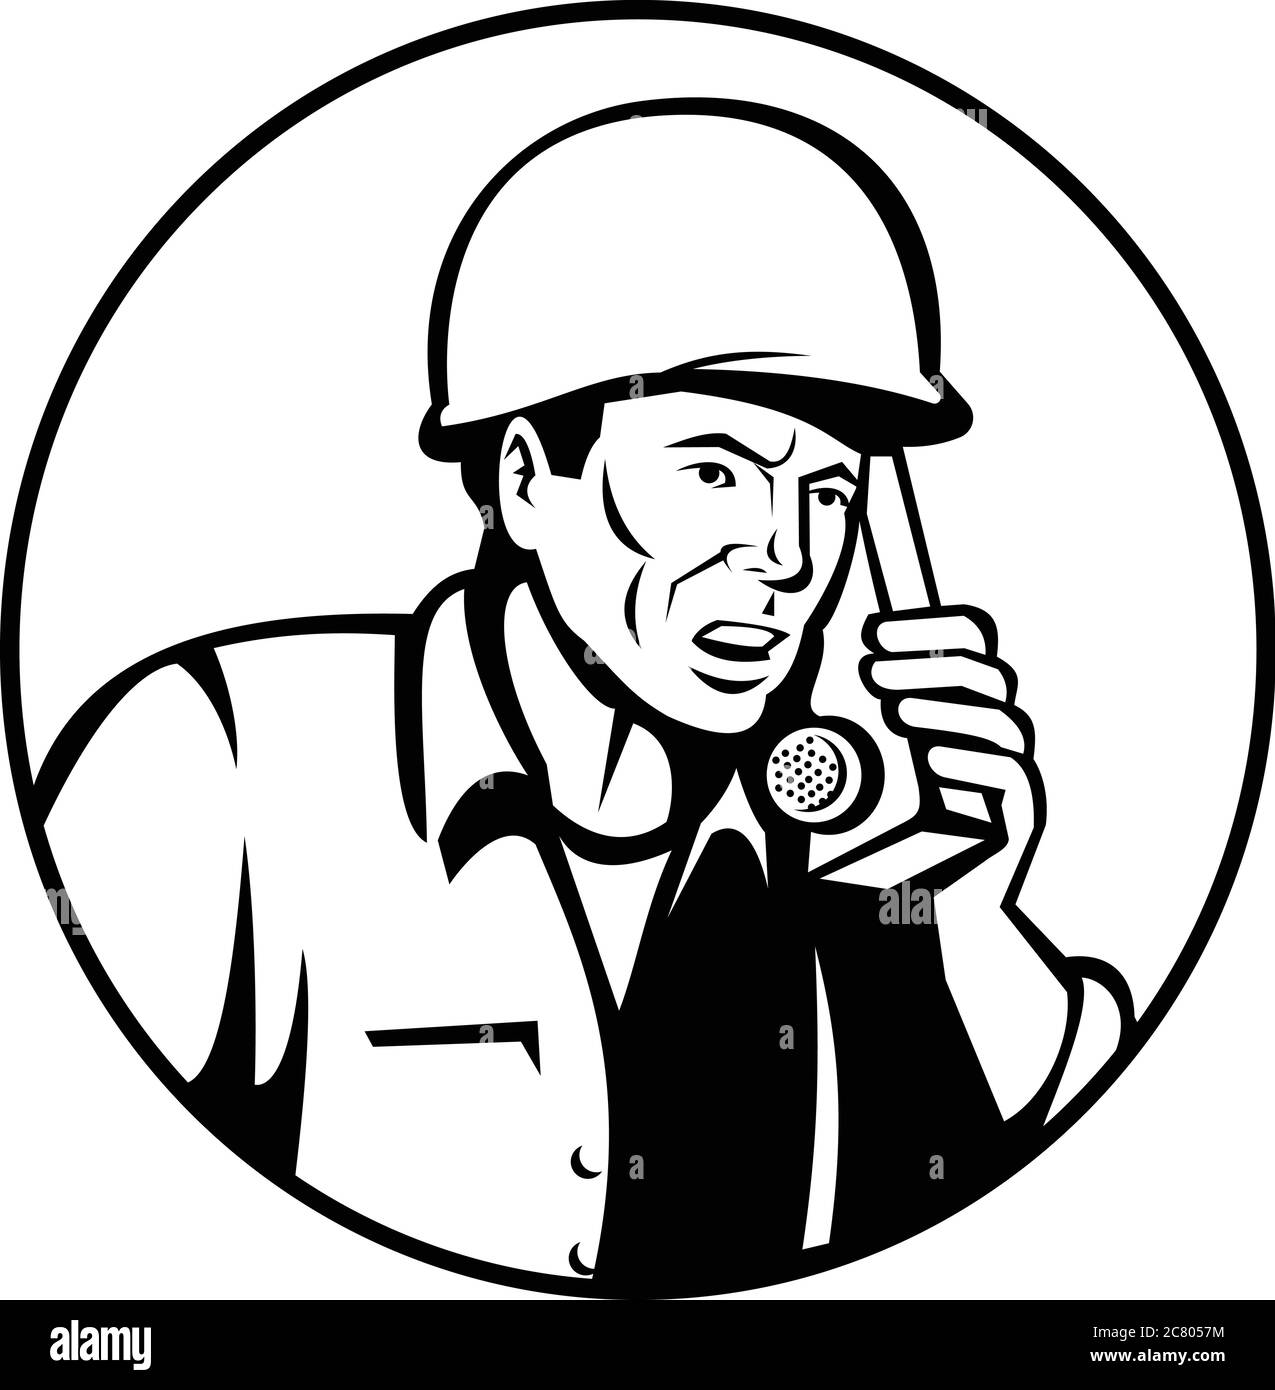 Schwarz-weiße Abbildung eines Zweiten Weltkriegs zwei amerikanische Soldaten Militärangehörigen sprechen und rufen Walkie-Talkie Funkkommunikation innerhalb Kreis auf gesetzt Stock Vektor